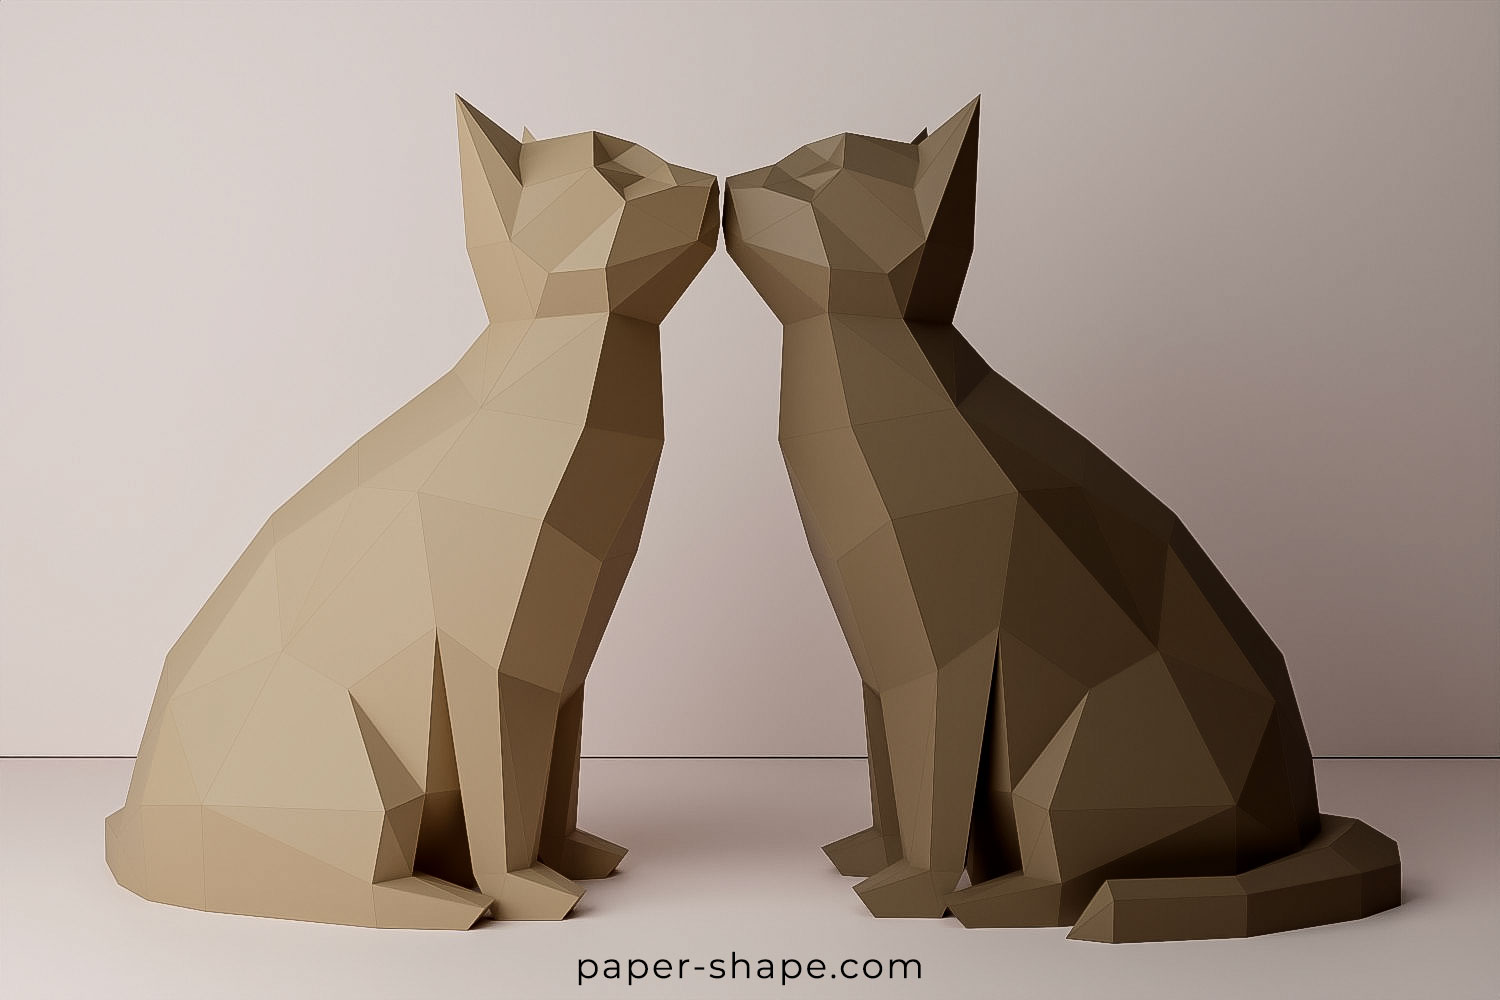 Küssende Papercraft Katzen in schoko- und rehbraun